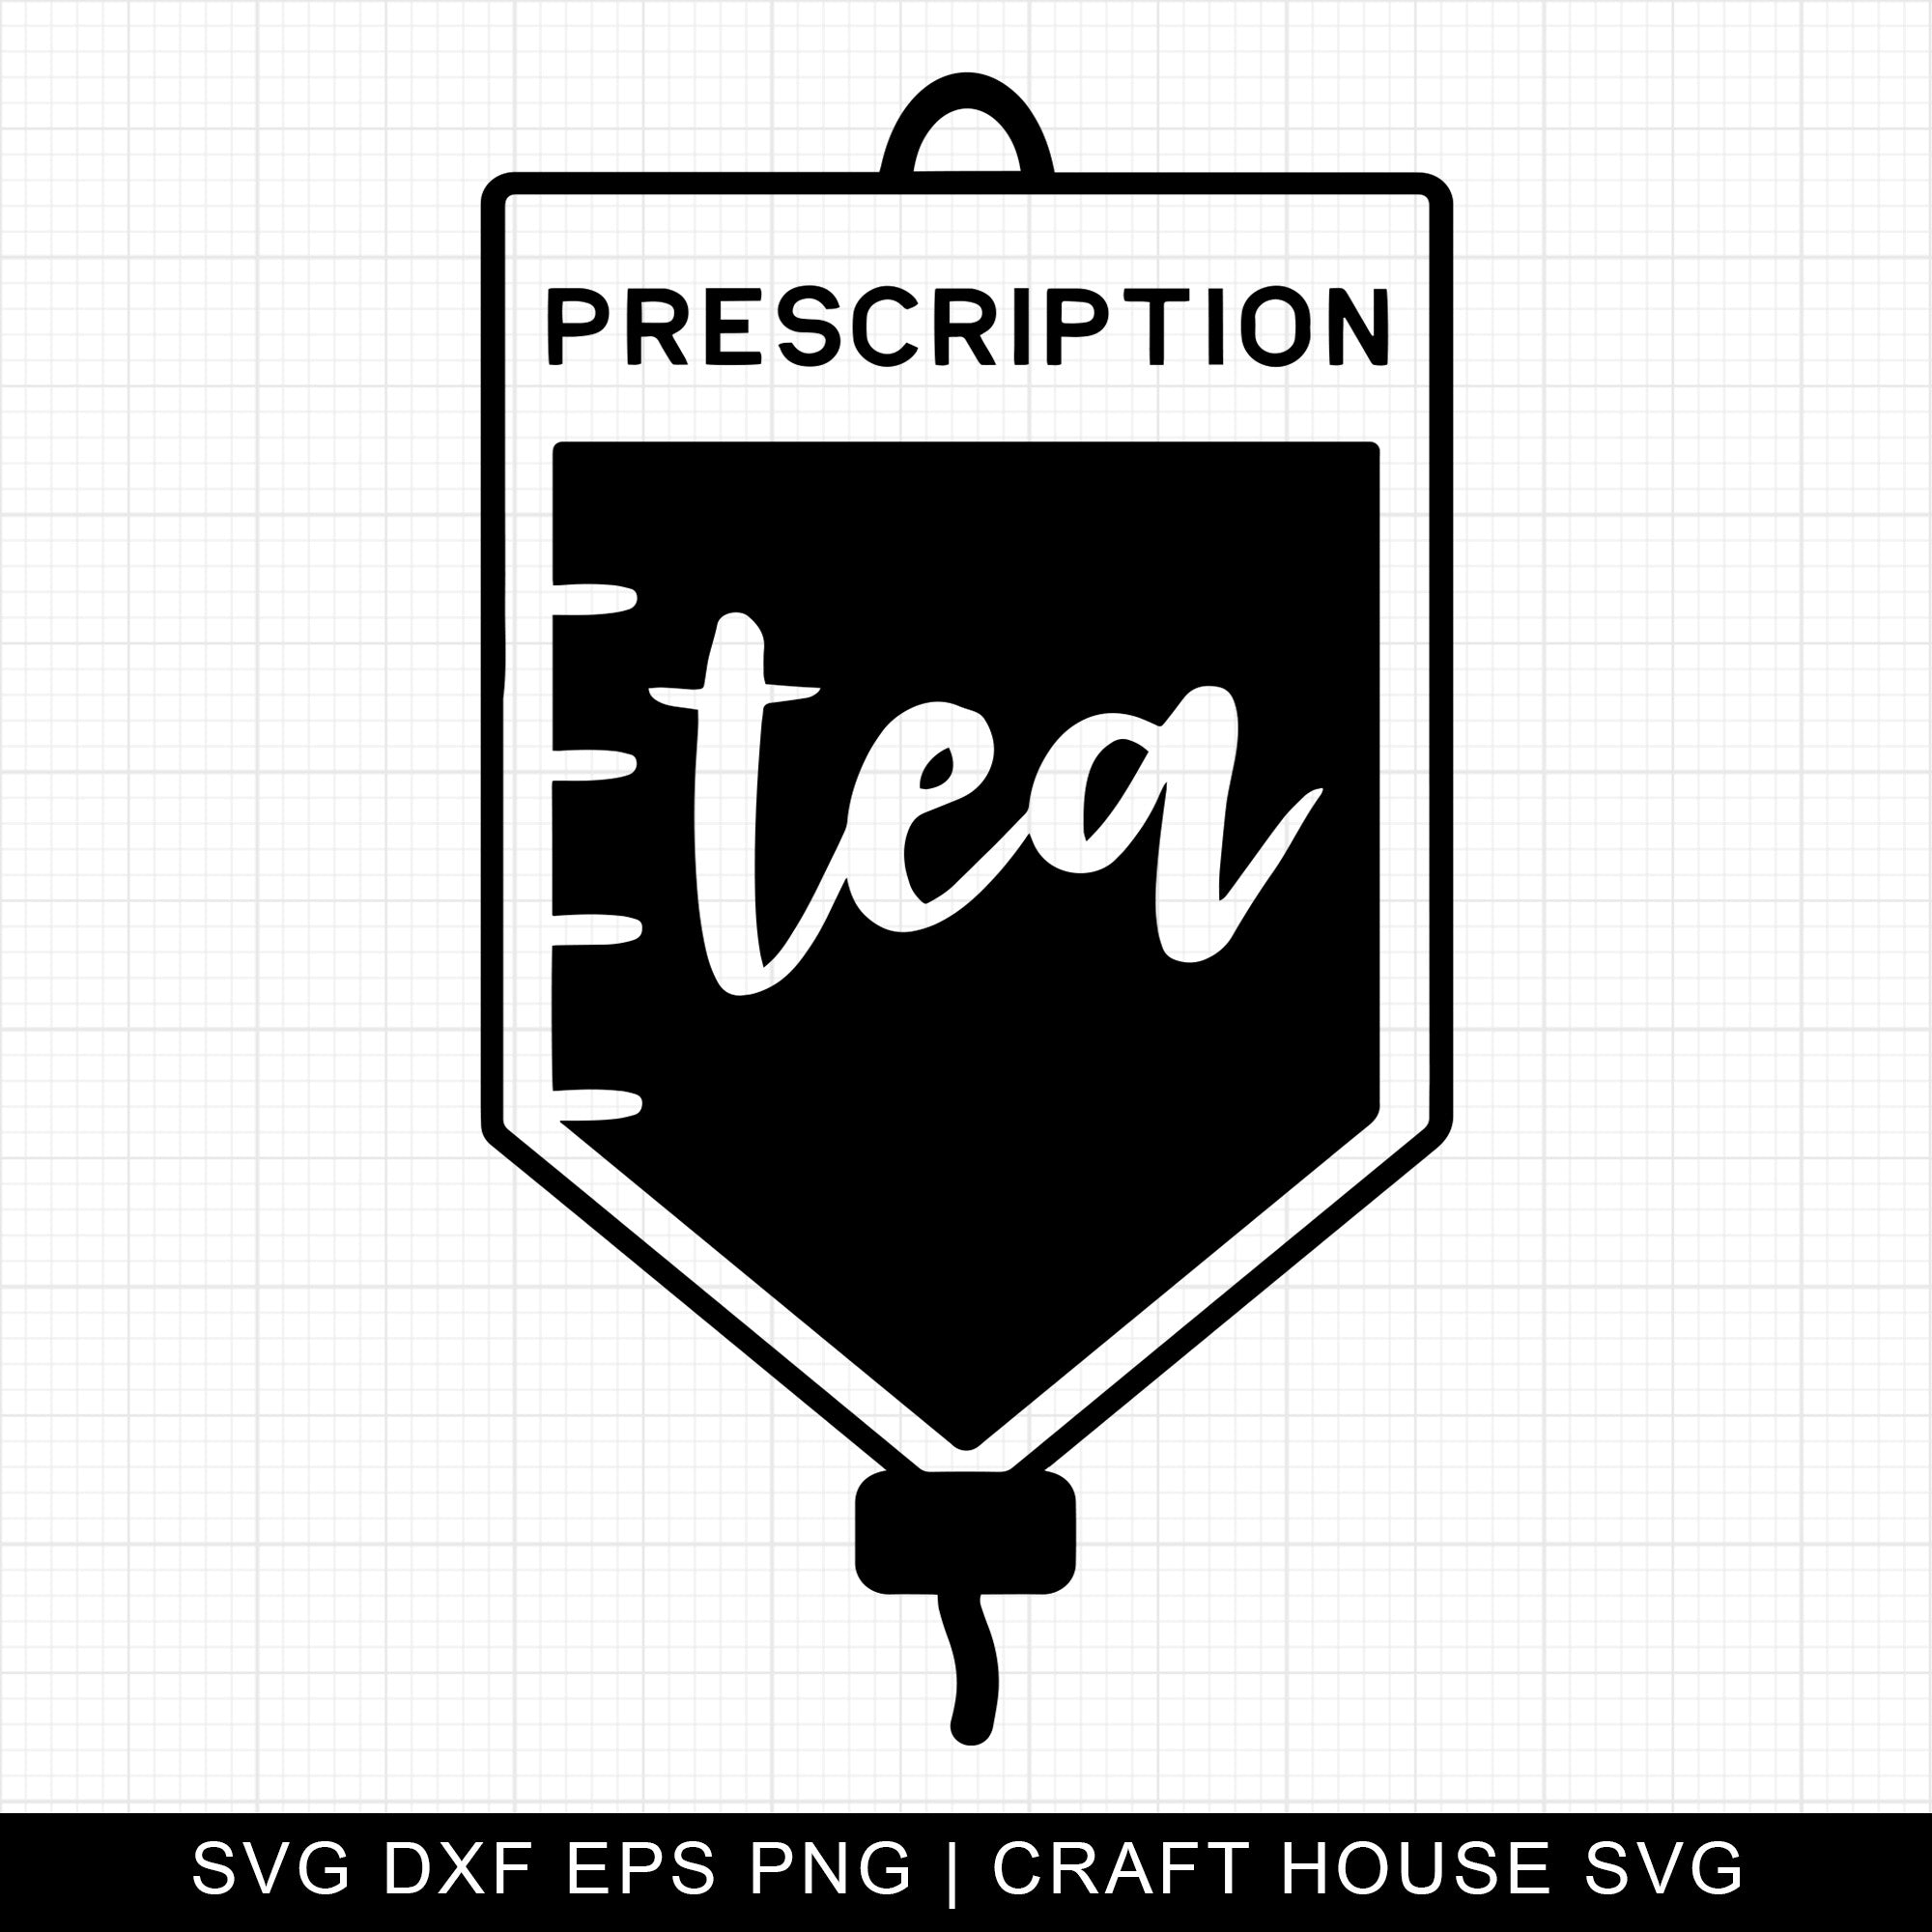 Prescription tea SVG | M4F19